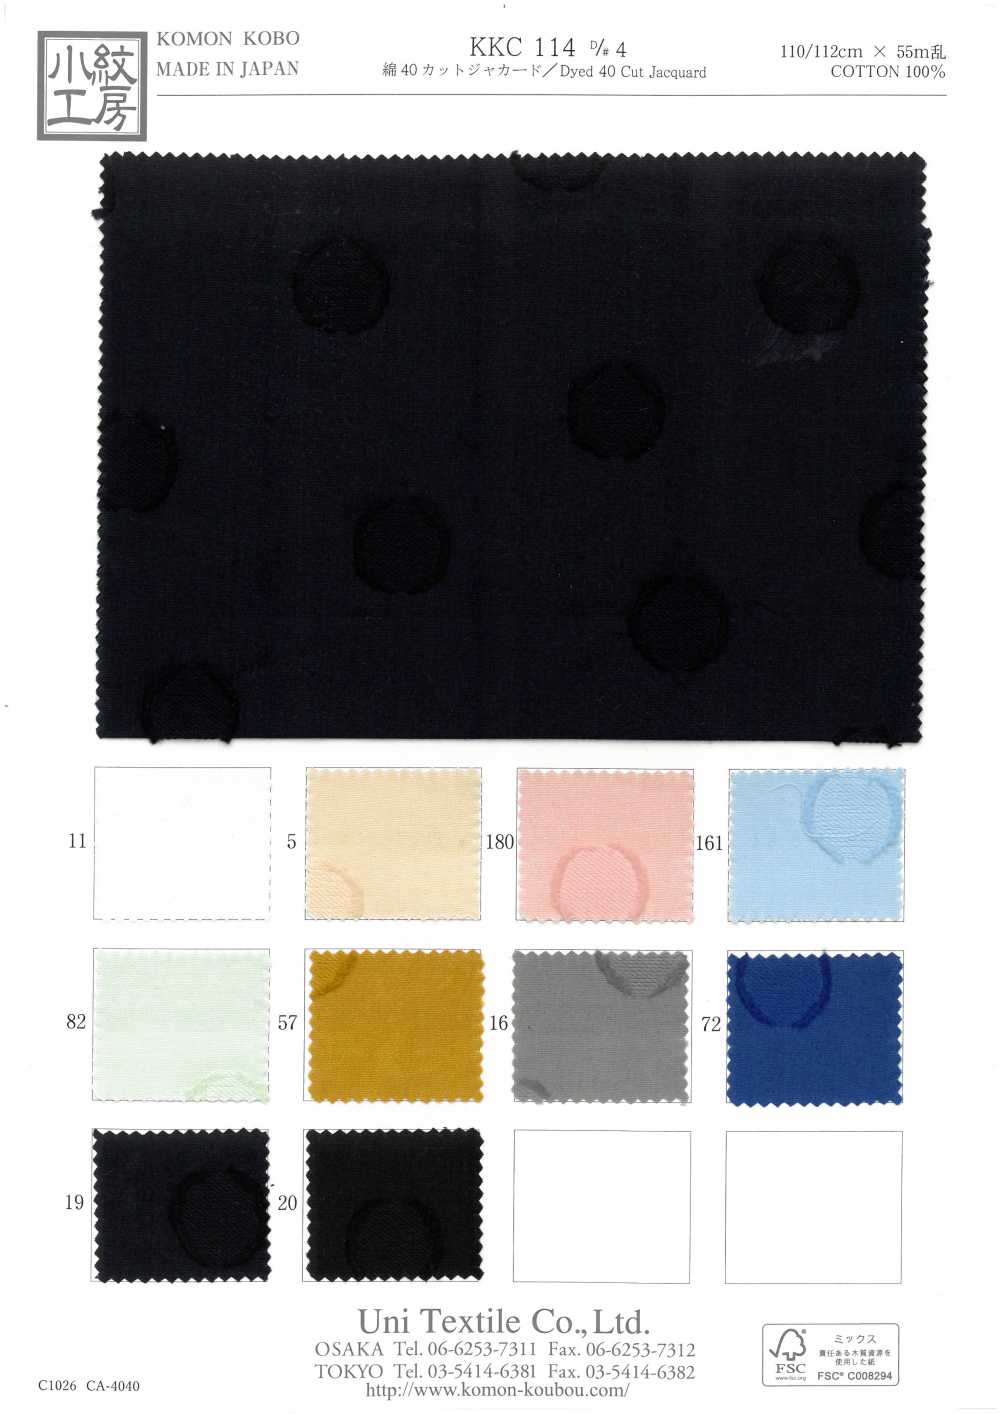 KKC114 D-4 40 Cotone Taglio Jacquard[Tessile / Tessuto] Uni Textile